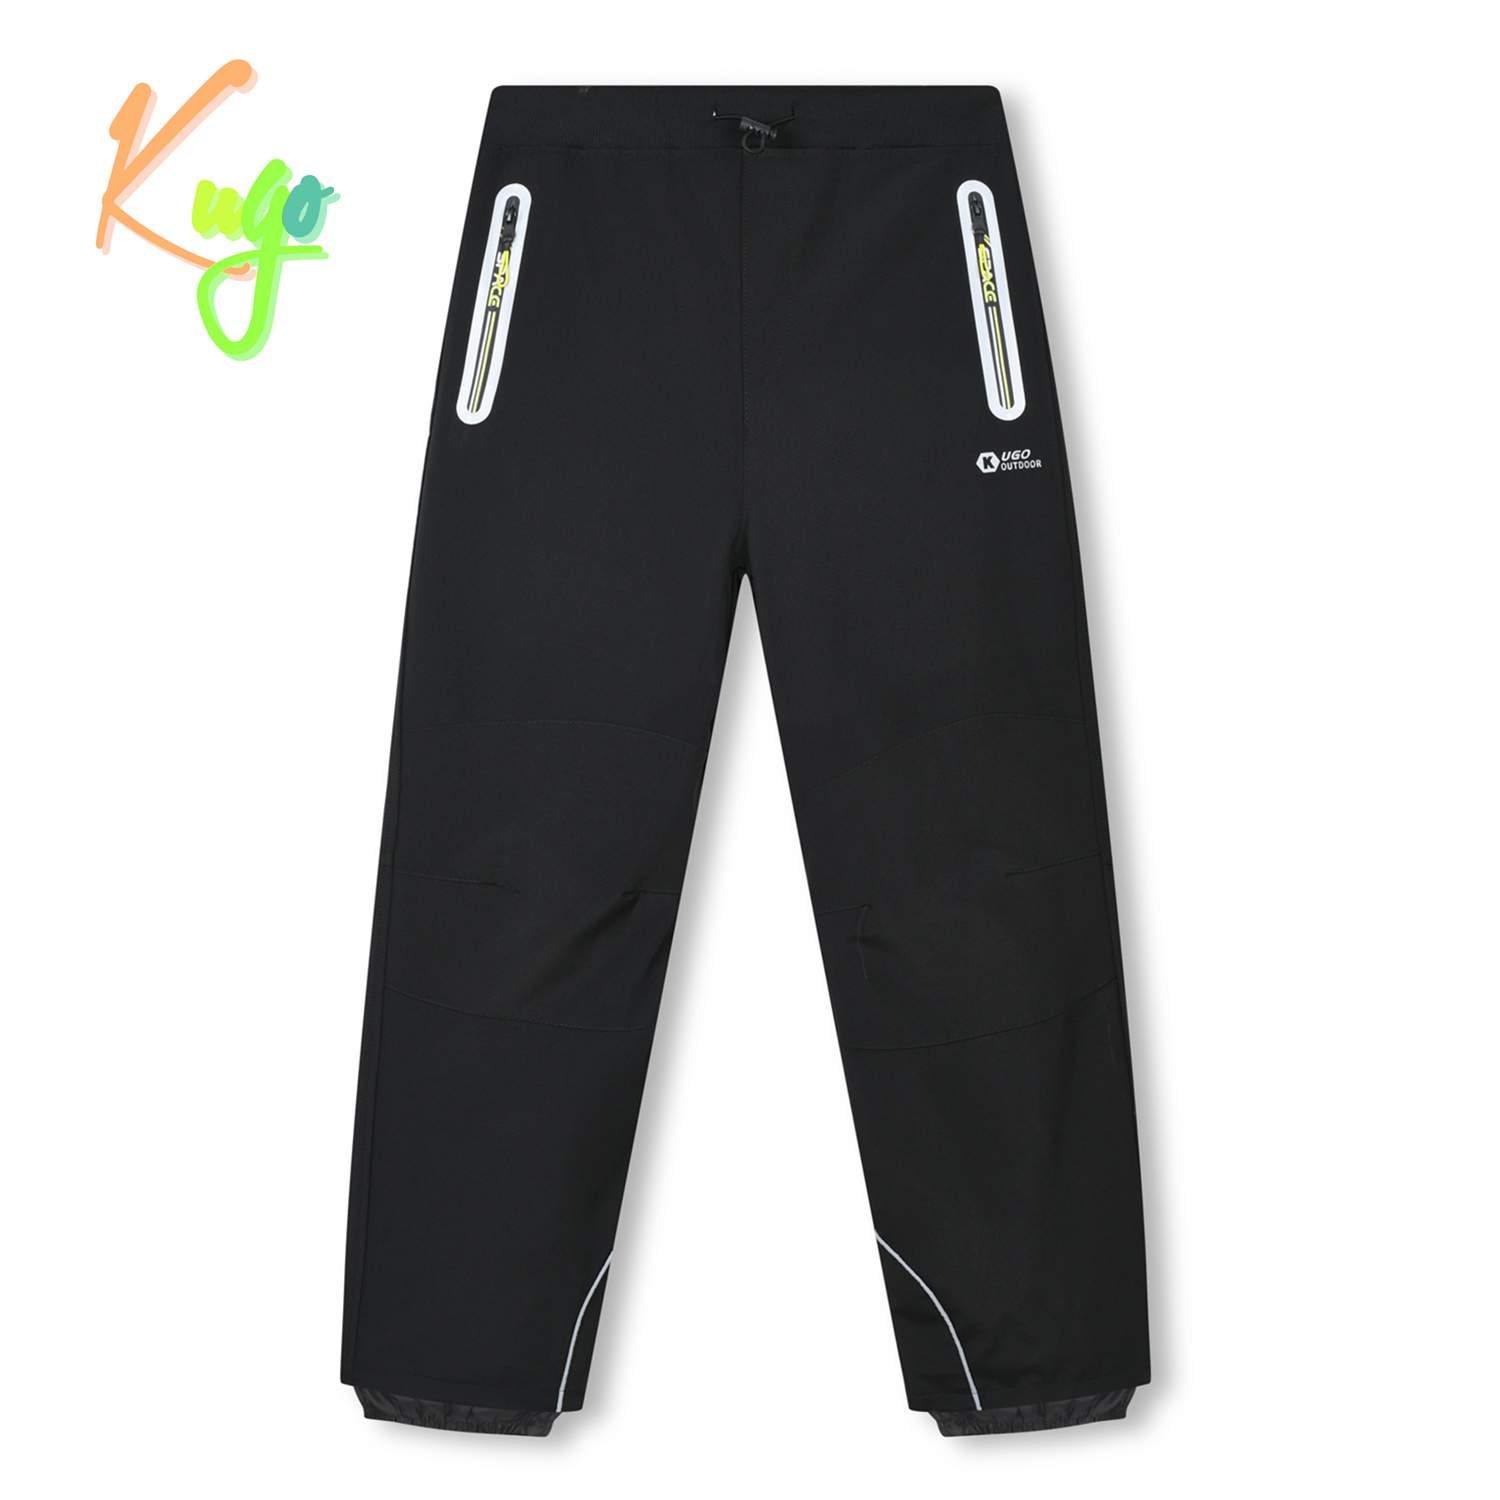 Chlapecké softshellové kalhoty - KUGO HK3119, černá / signální zipy Barva: Černá, Velikost: 140